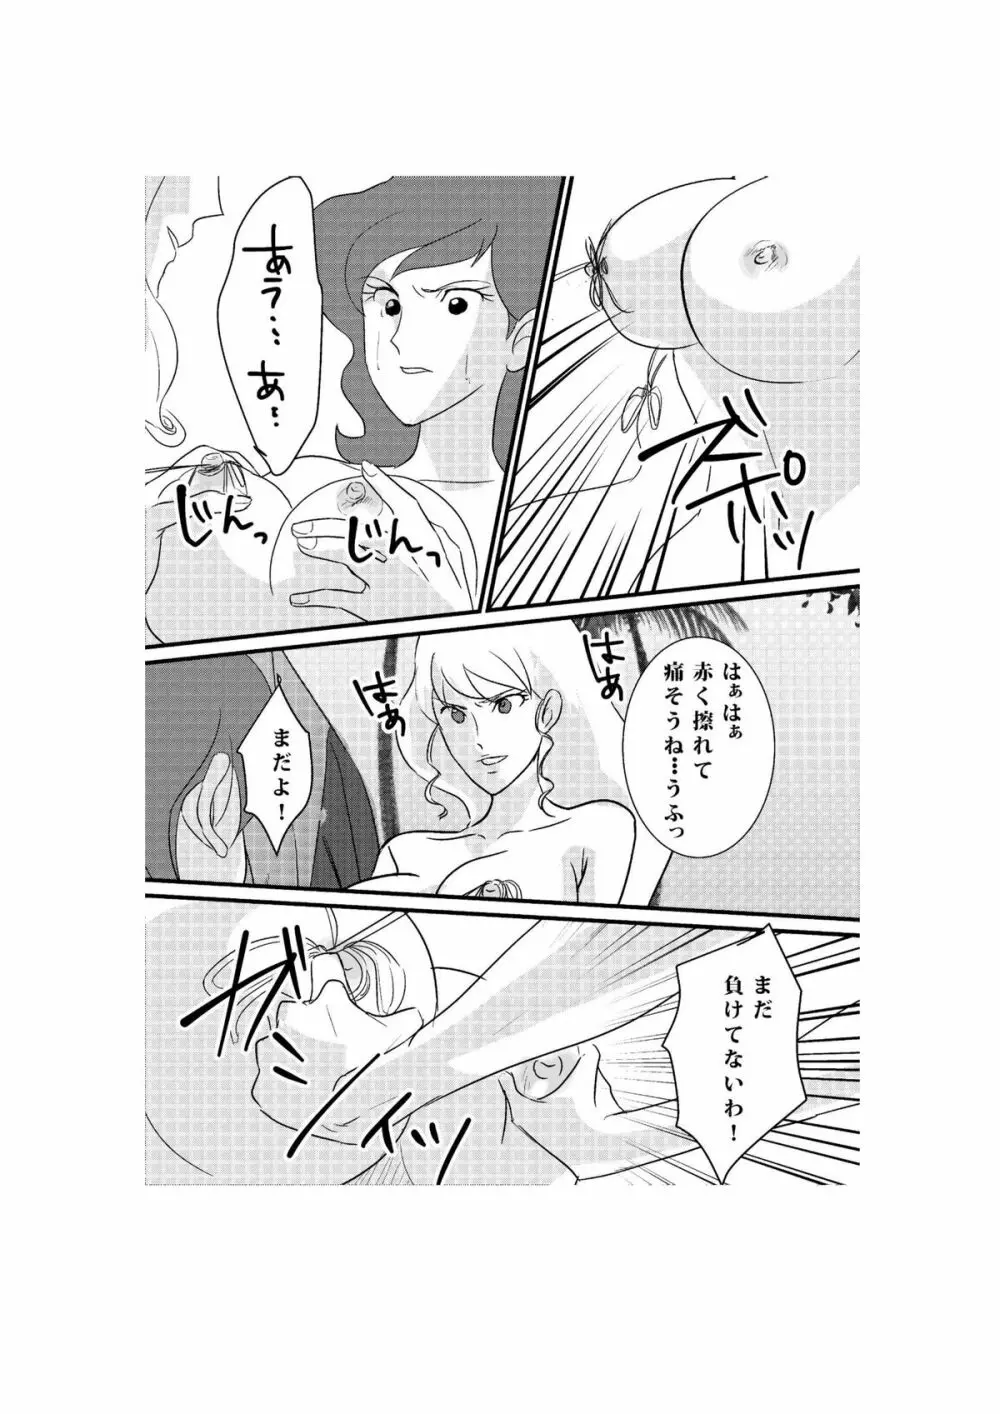 Fushi no Kyouten Ureta Onna no Tatakai - Fujiko VS Emmanuelle - page9